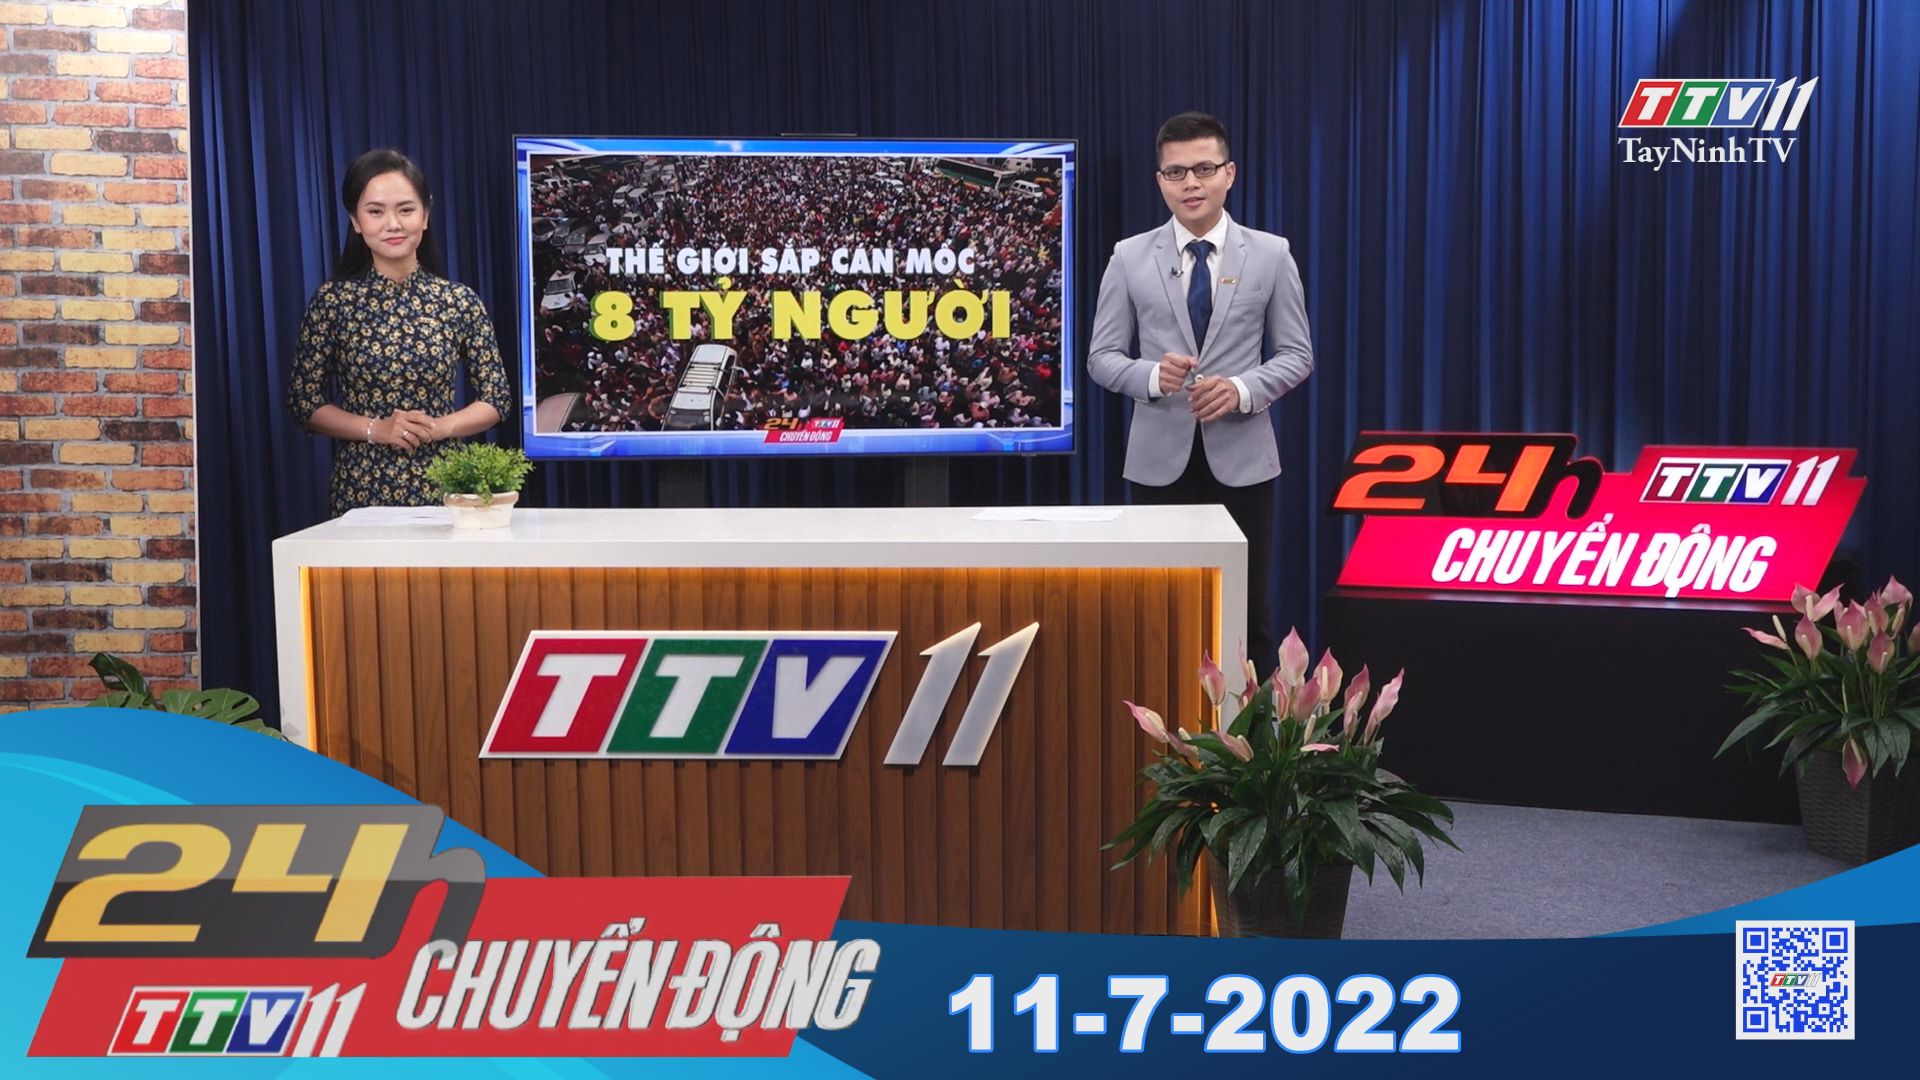 24h Chuyển động 11-7-2022 | Tin tức hôm nay | TayNinhTV